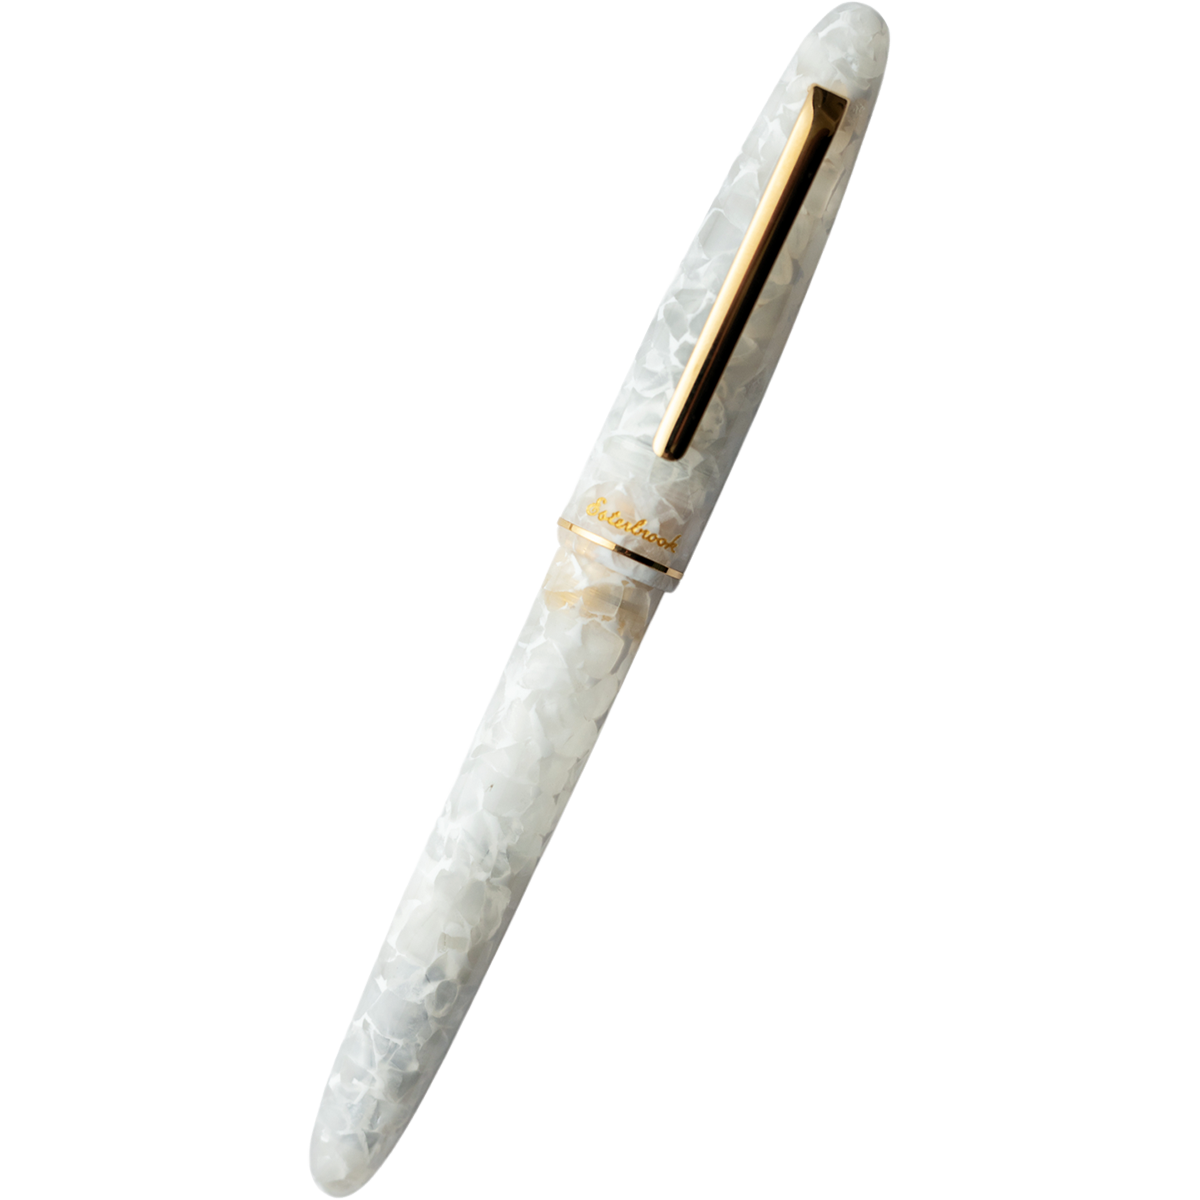 Esterbrook Estie Fountain Pen - Winter White - Gold Trim Esterbrook Pens